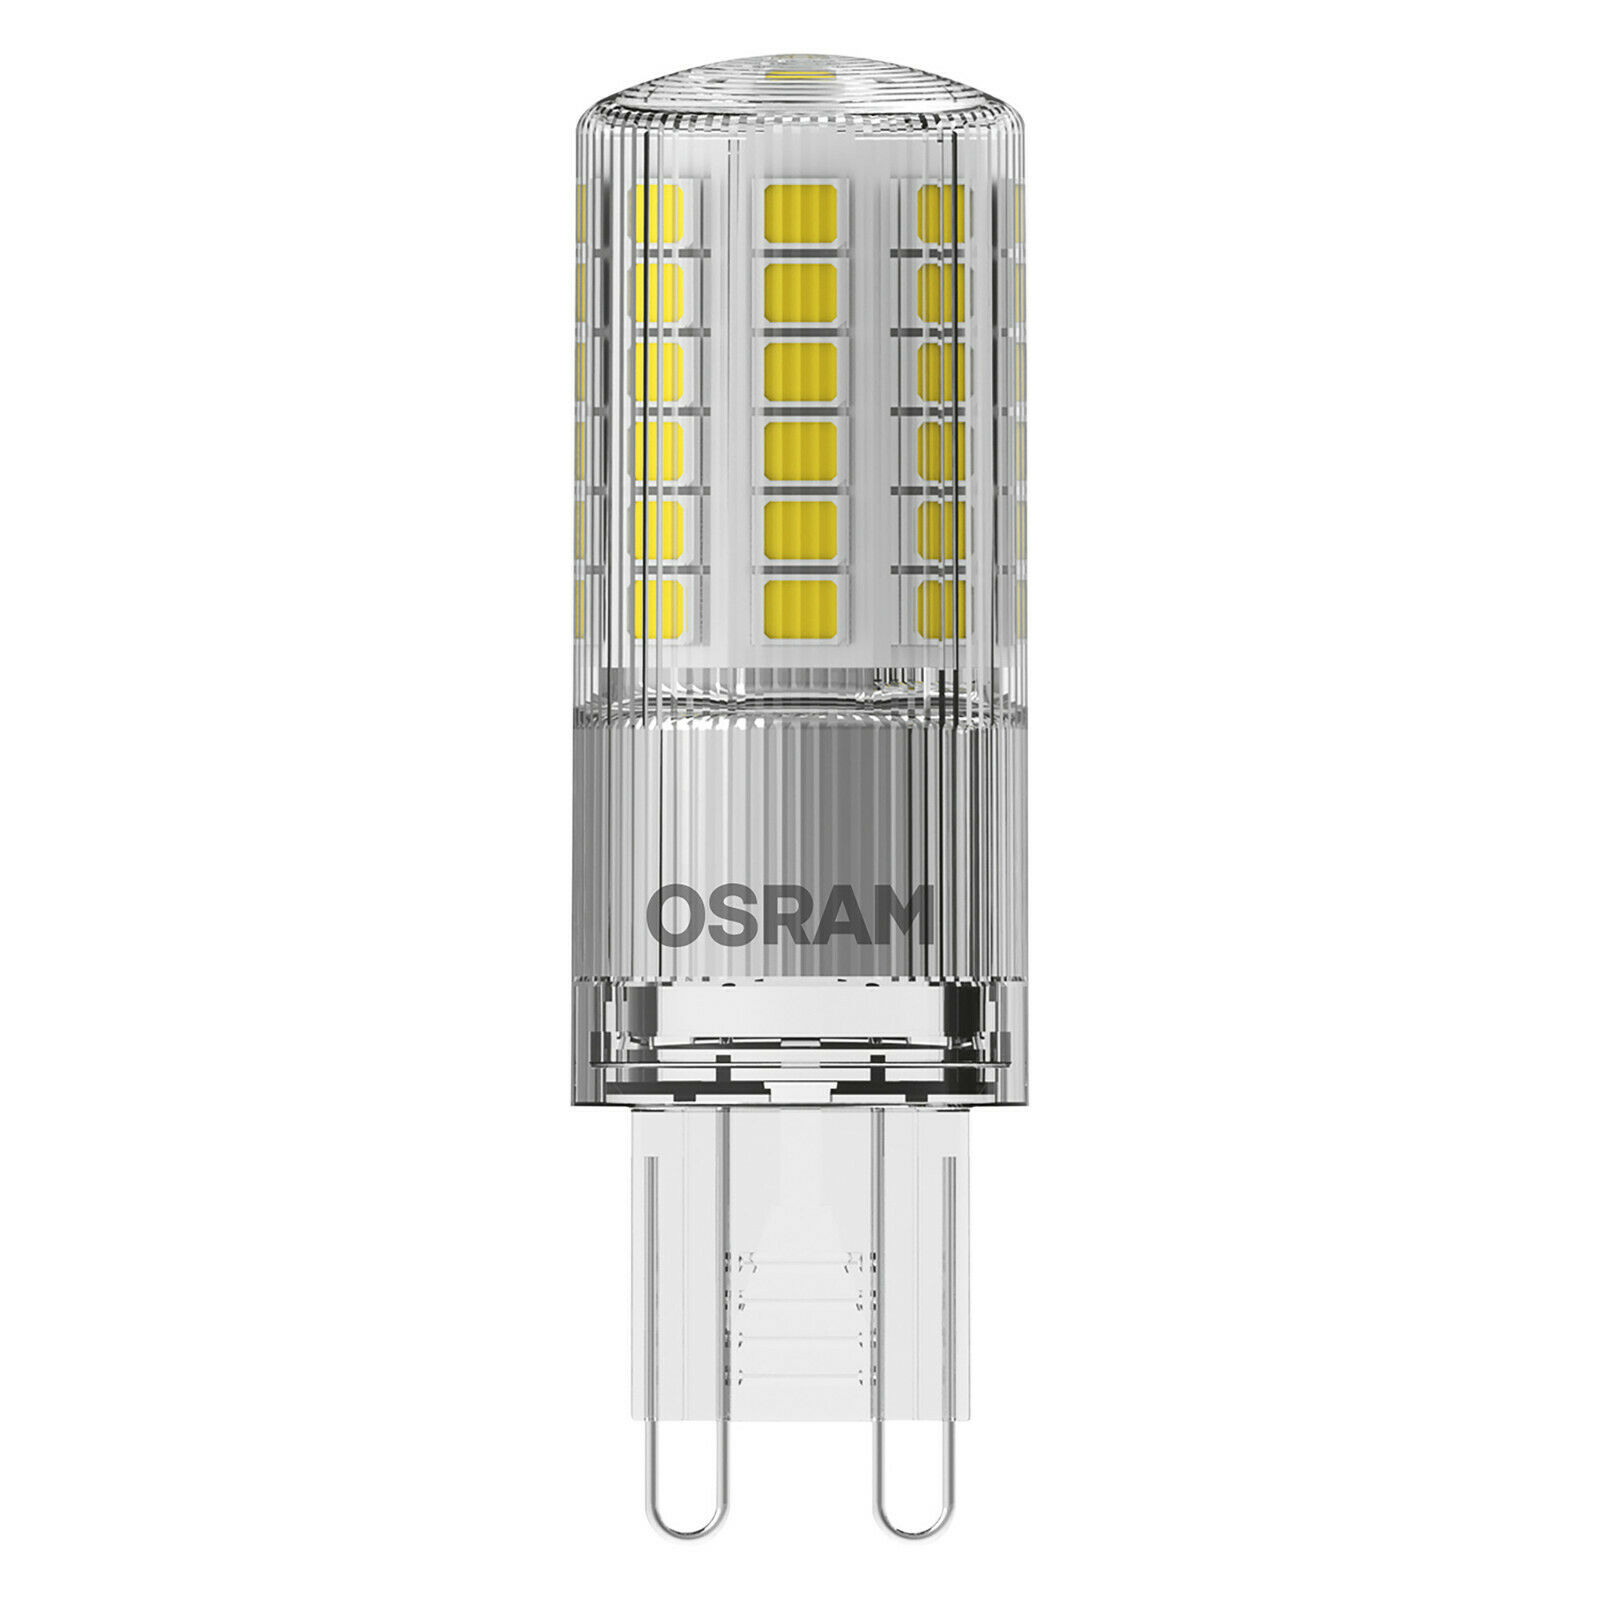 Osram LED Pin Lampe 4,8 Watt G9 827 warmweiß extra 